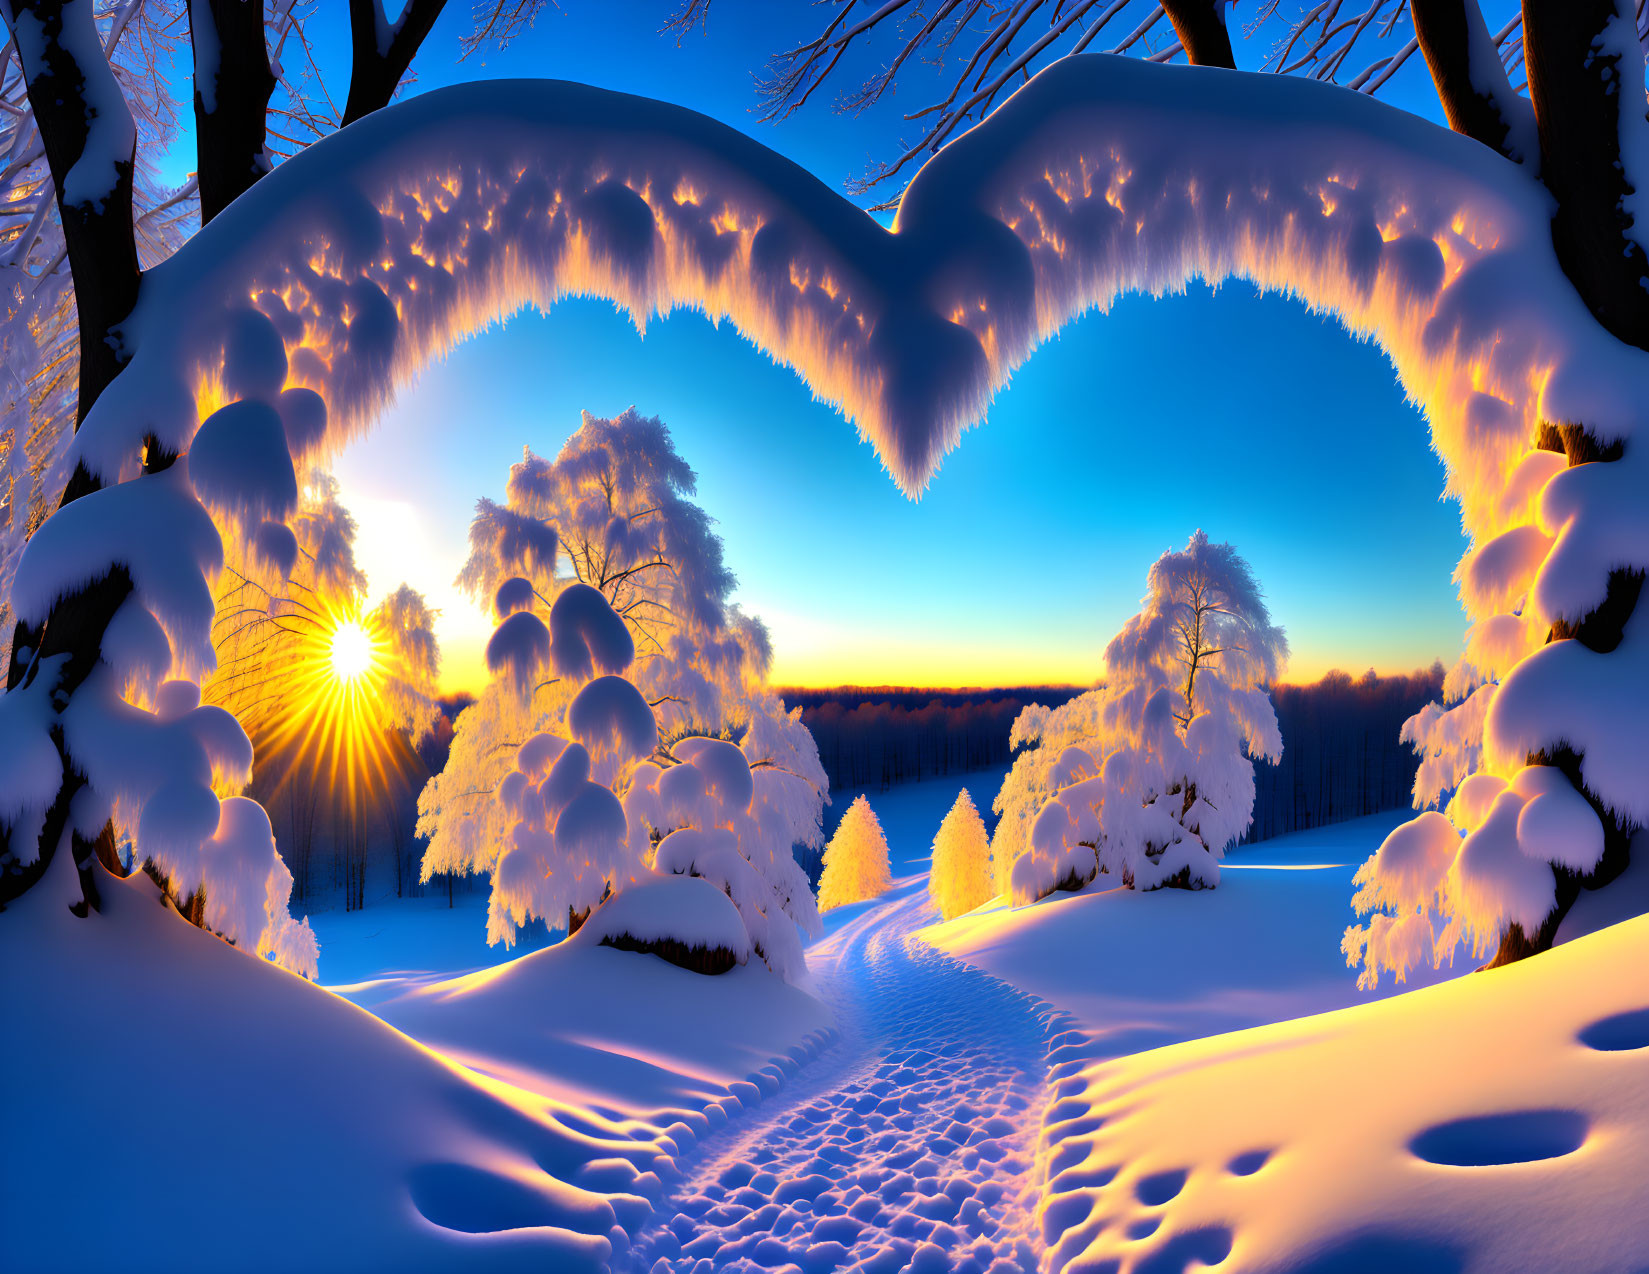 Winter Sunset Scene: Heart-Shaped Tree Silhouette in Snowy Landscape